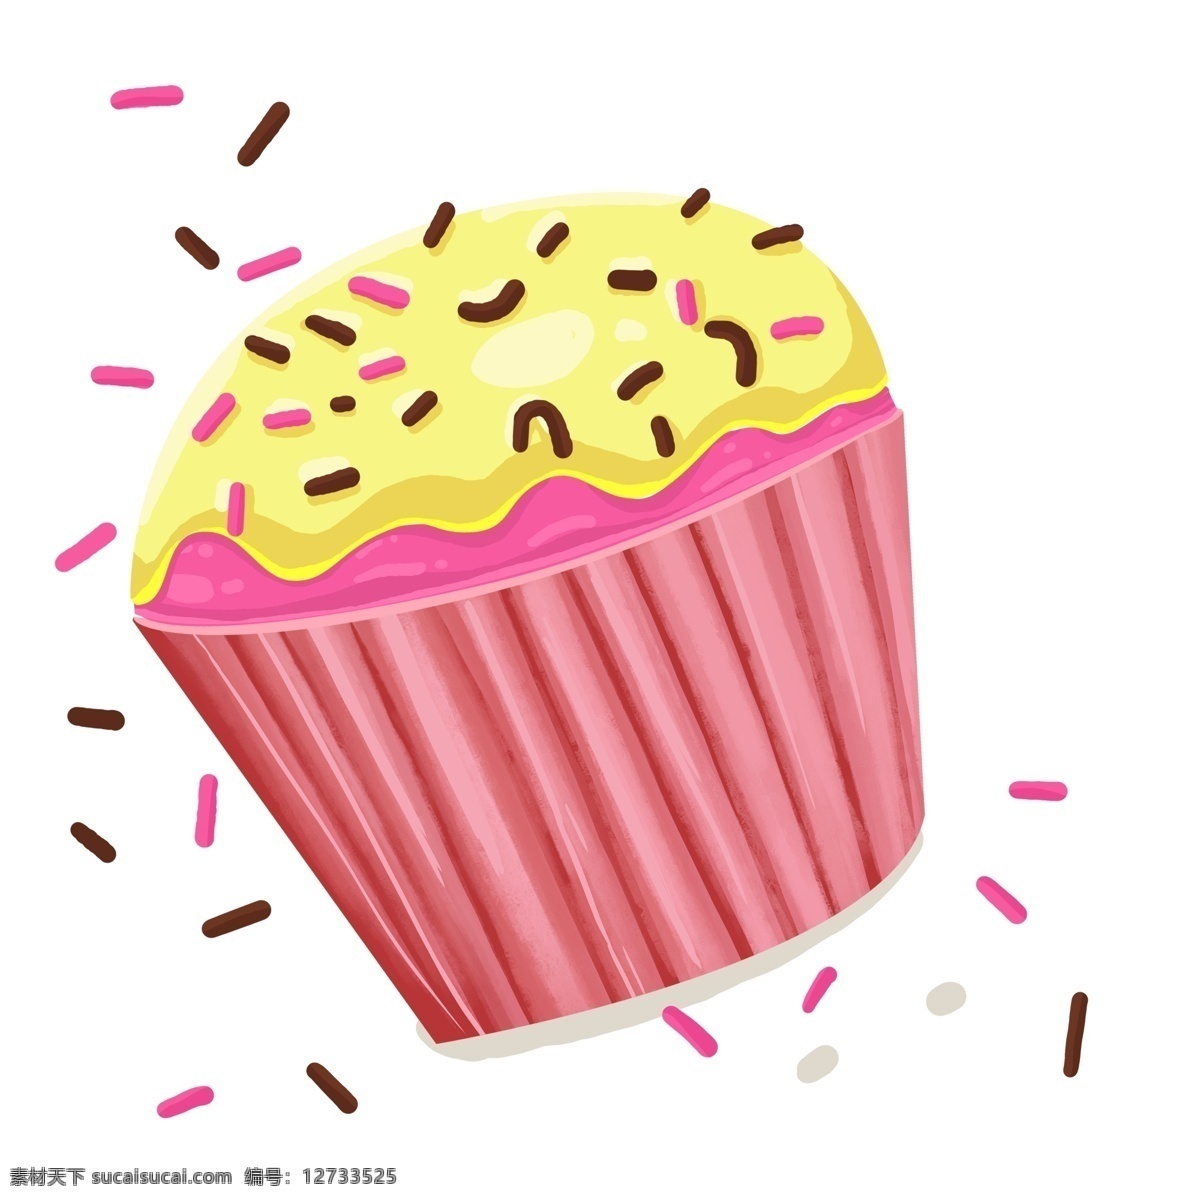 美味 纸杯 蛋糕 卡通 元素 美食 插画 糕点 彩色 卡通设计 手绘 纸杯蛋糕